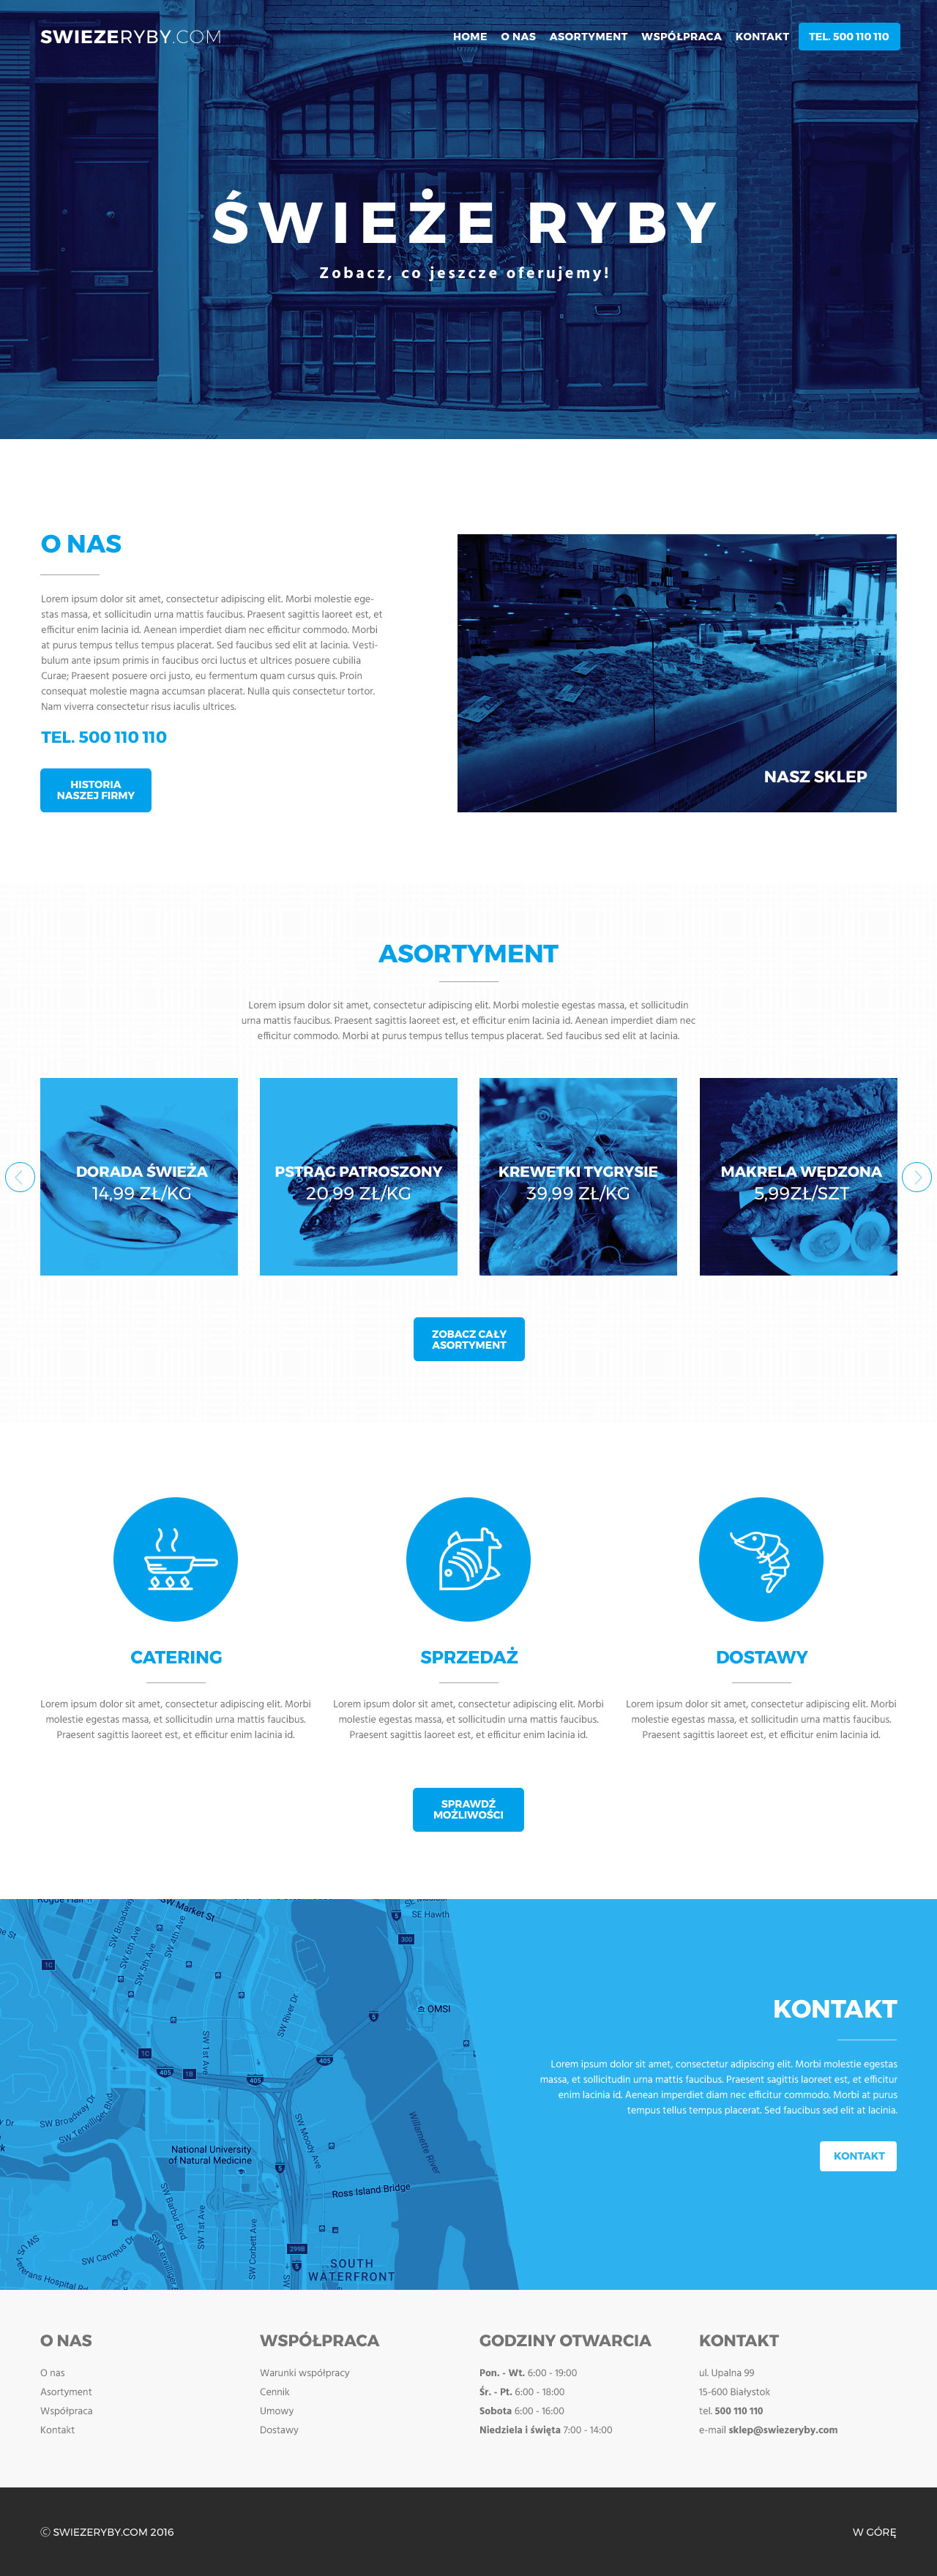 海鲜电商网站首页模板UI界面设计 .psd素材